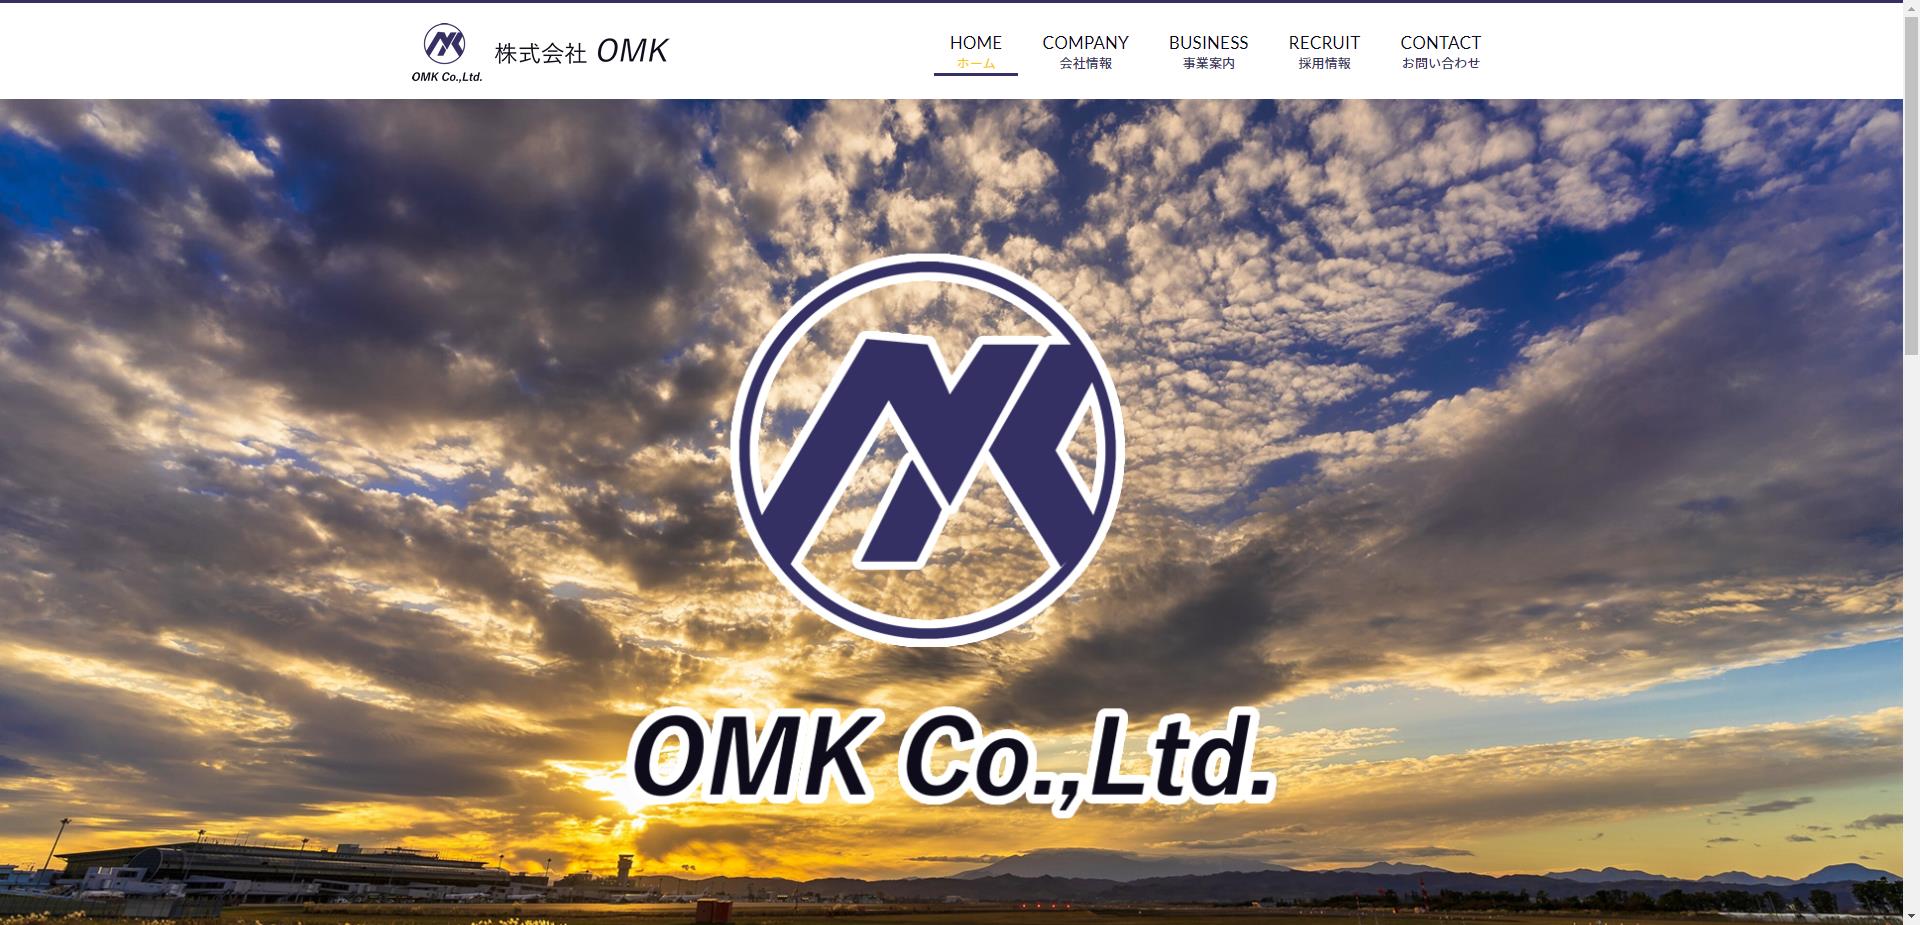 株式会社OMK